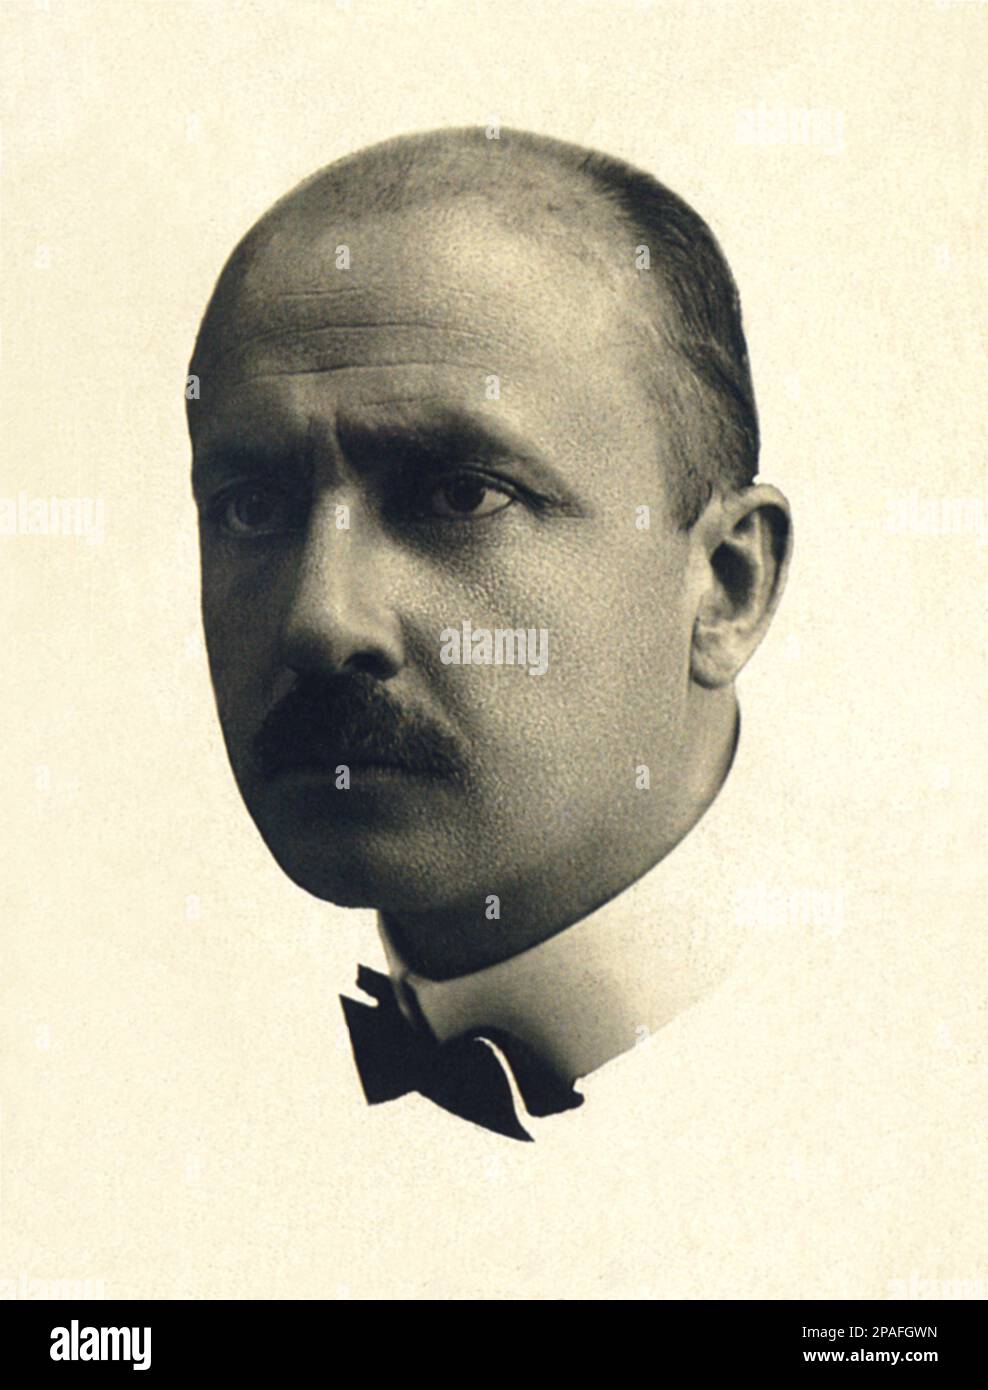 1915 ca :  The italian Futurist writer FILIPPO TOMMASO ( F.T. ) MARINETTI ( 1876 - 1944 )  - ARTE - ARTS - FUTURISMO - FUTURISM - FUTURISTA  - LETTERATURA  - FASCISMO - FASCISM  - LITTERATURE - SCRITTORE - LETTERATURA - AVANGUARDIA - Avantgarde - Avangarde - ARTE - ARTS - baffi - moustache - tie bow - papillon - cravatta - collar - colletto   ----      ARCHIVIO GBB Stock Photo